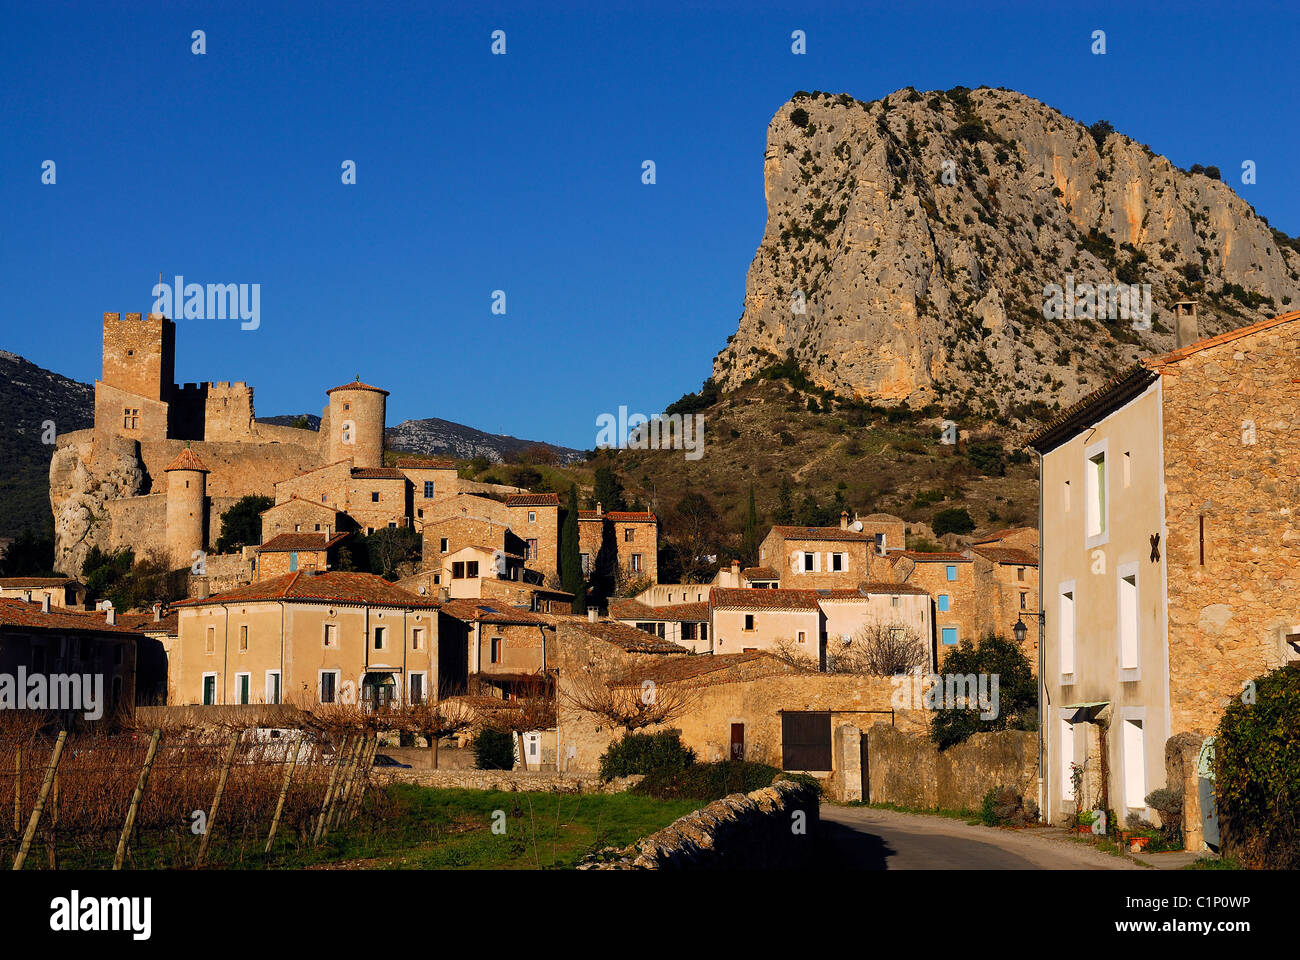 France, Herault, Saint Jean de Bueges village and castle Stock Photo - Alamy